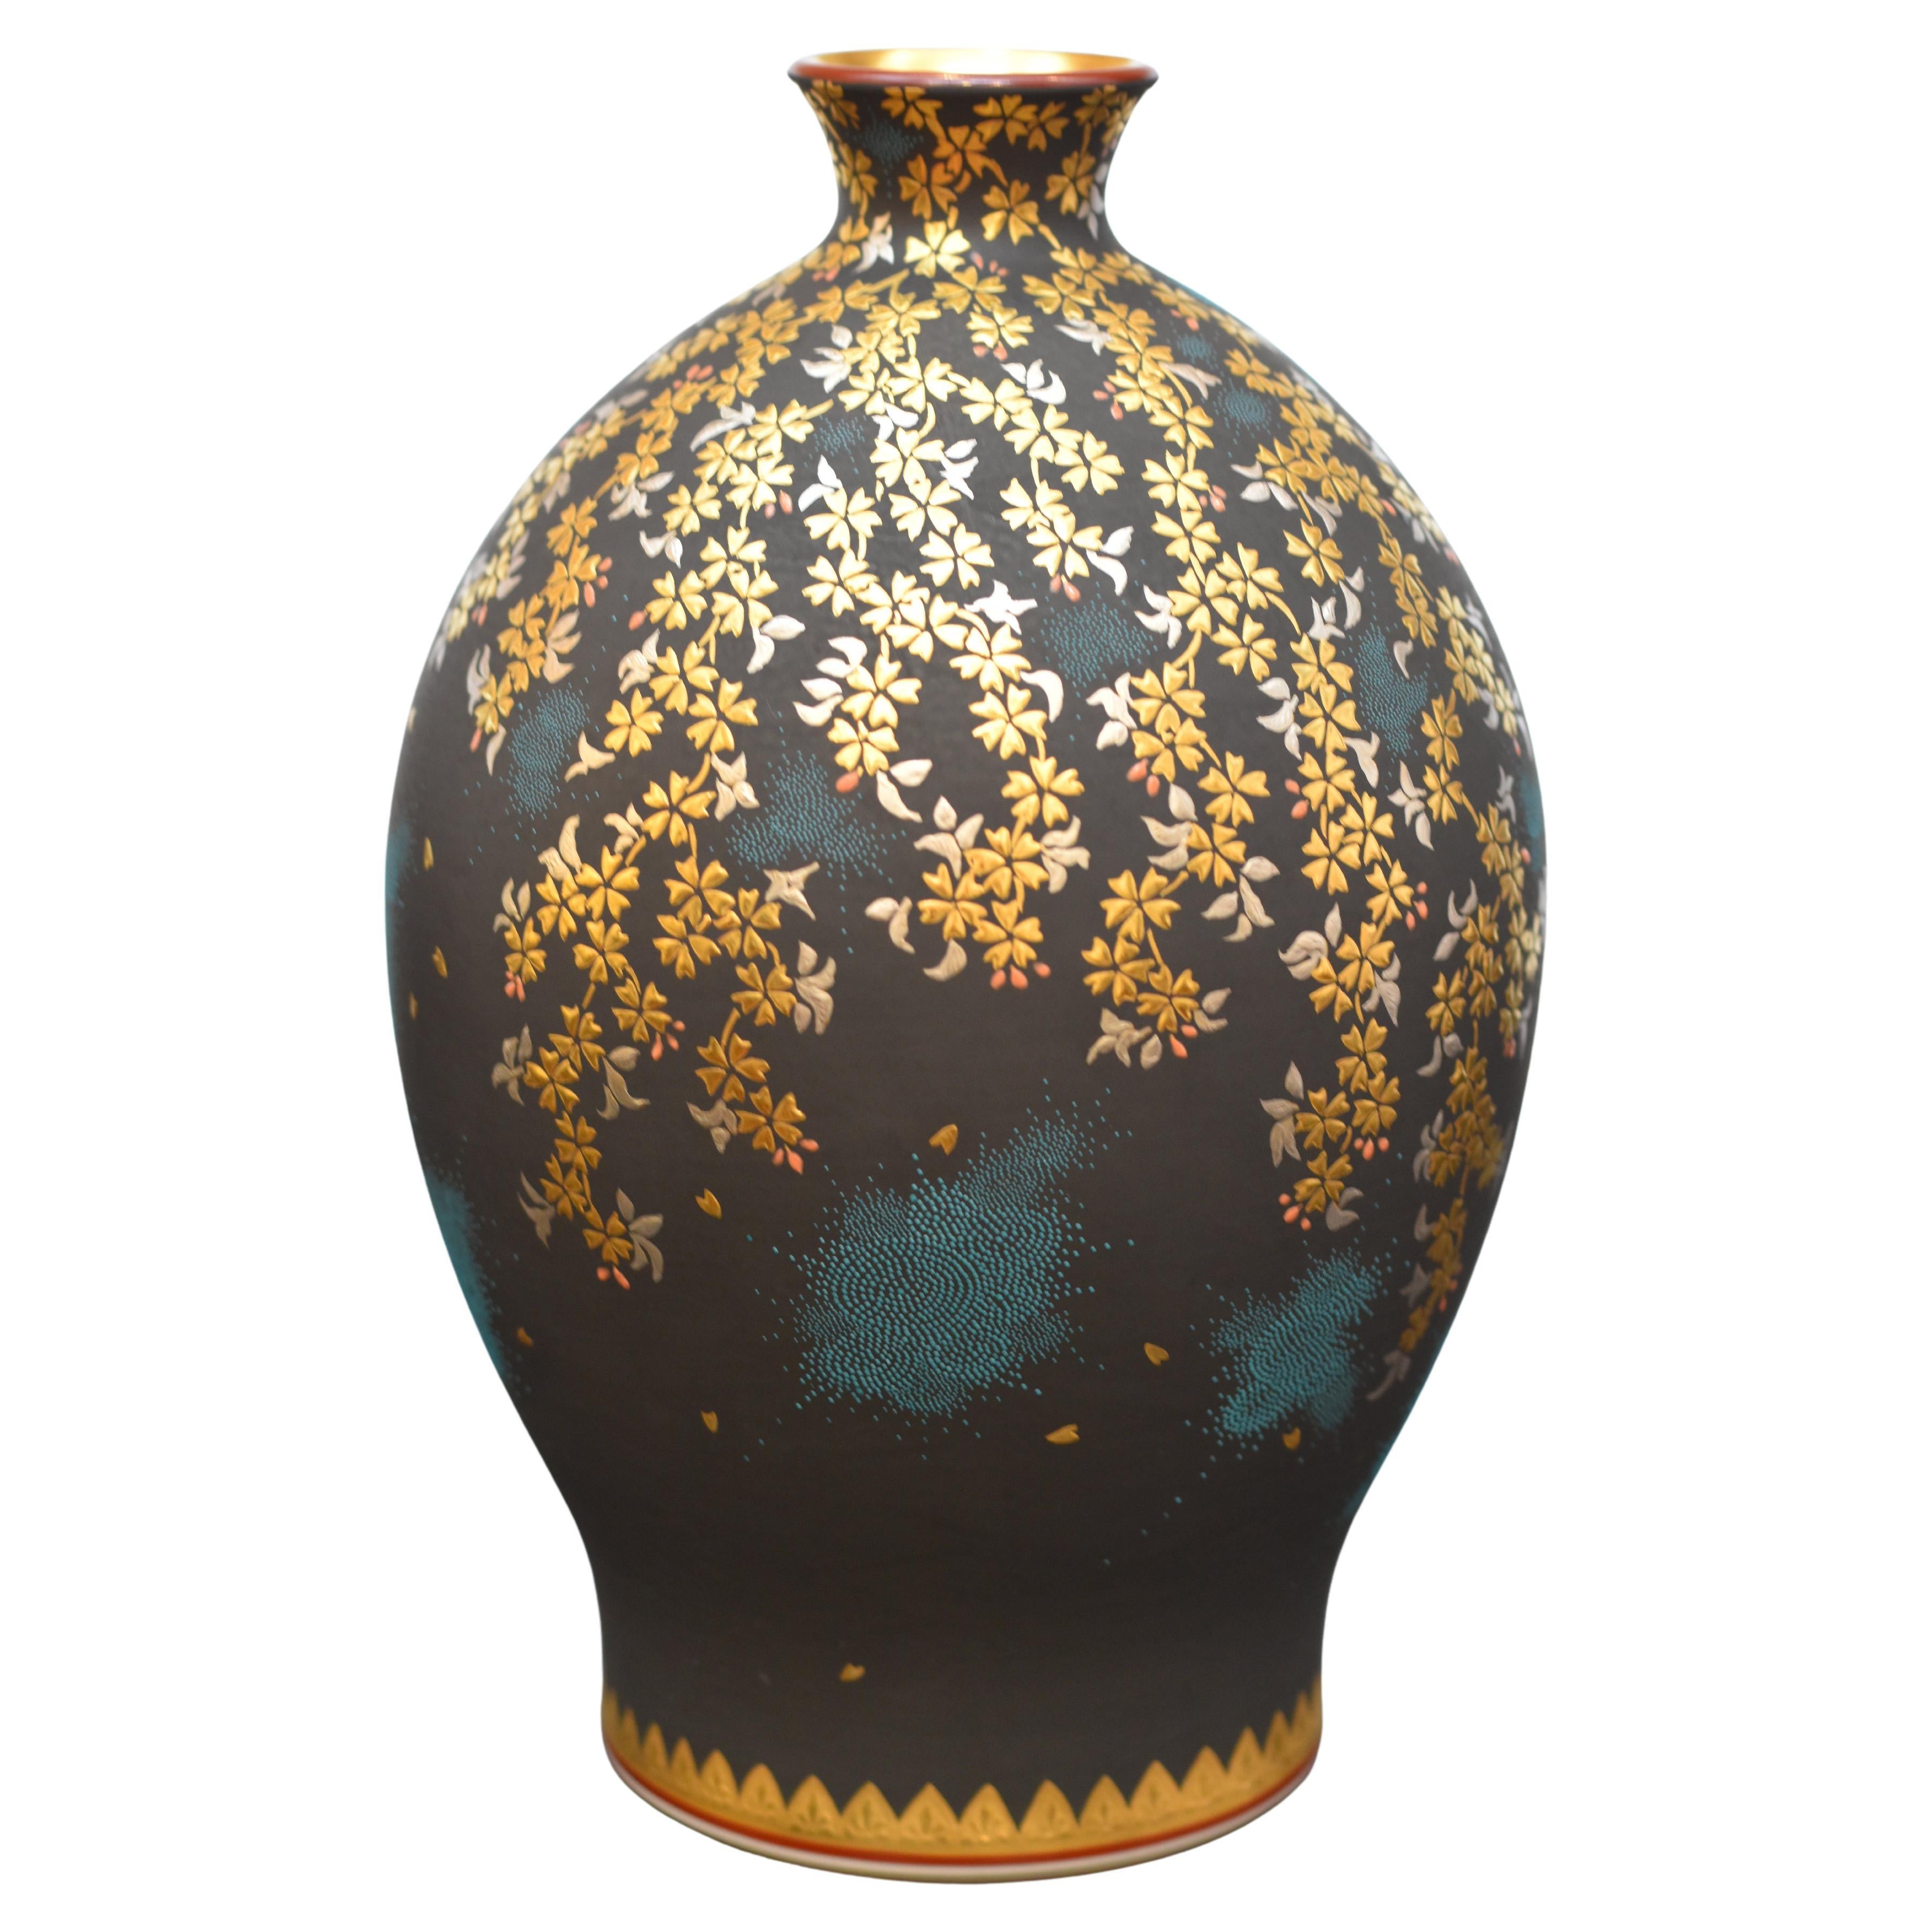 Vase en porcelaine contemporaine japonaise signée, d'une qualité muséale exquise,  Un chef-d'œuvre de la troisième génération d'artistes en porcelaine de la région de Kutani au Japon, très acclamé et primé, représentant une cascade de fleurs de